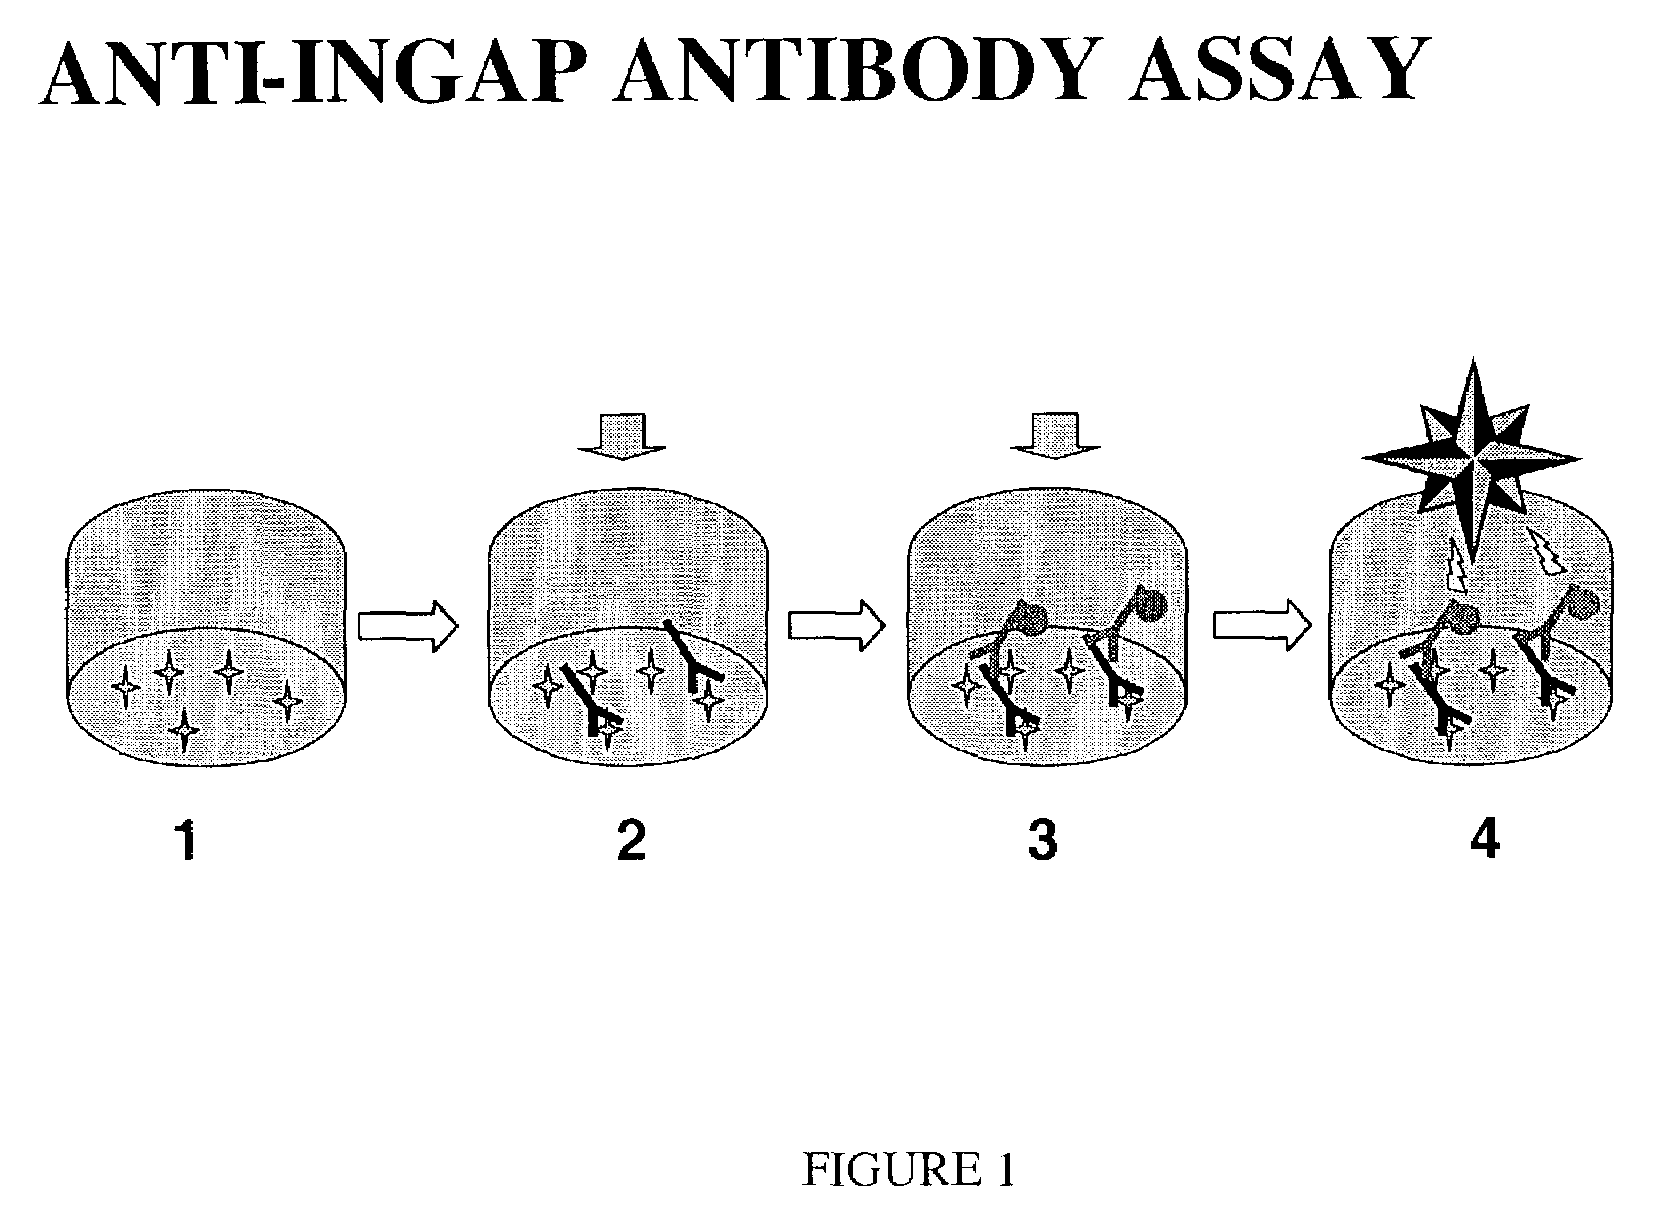 Assay for anti-INGAP antibodies